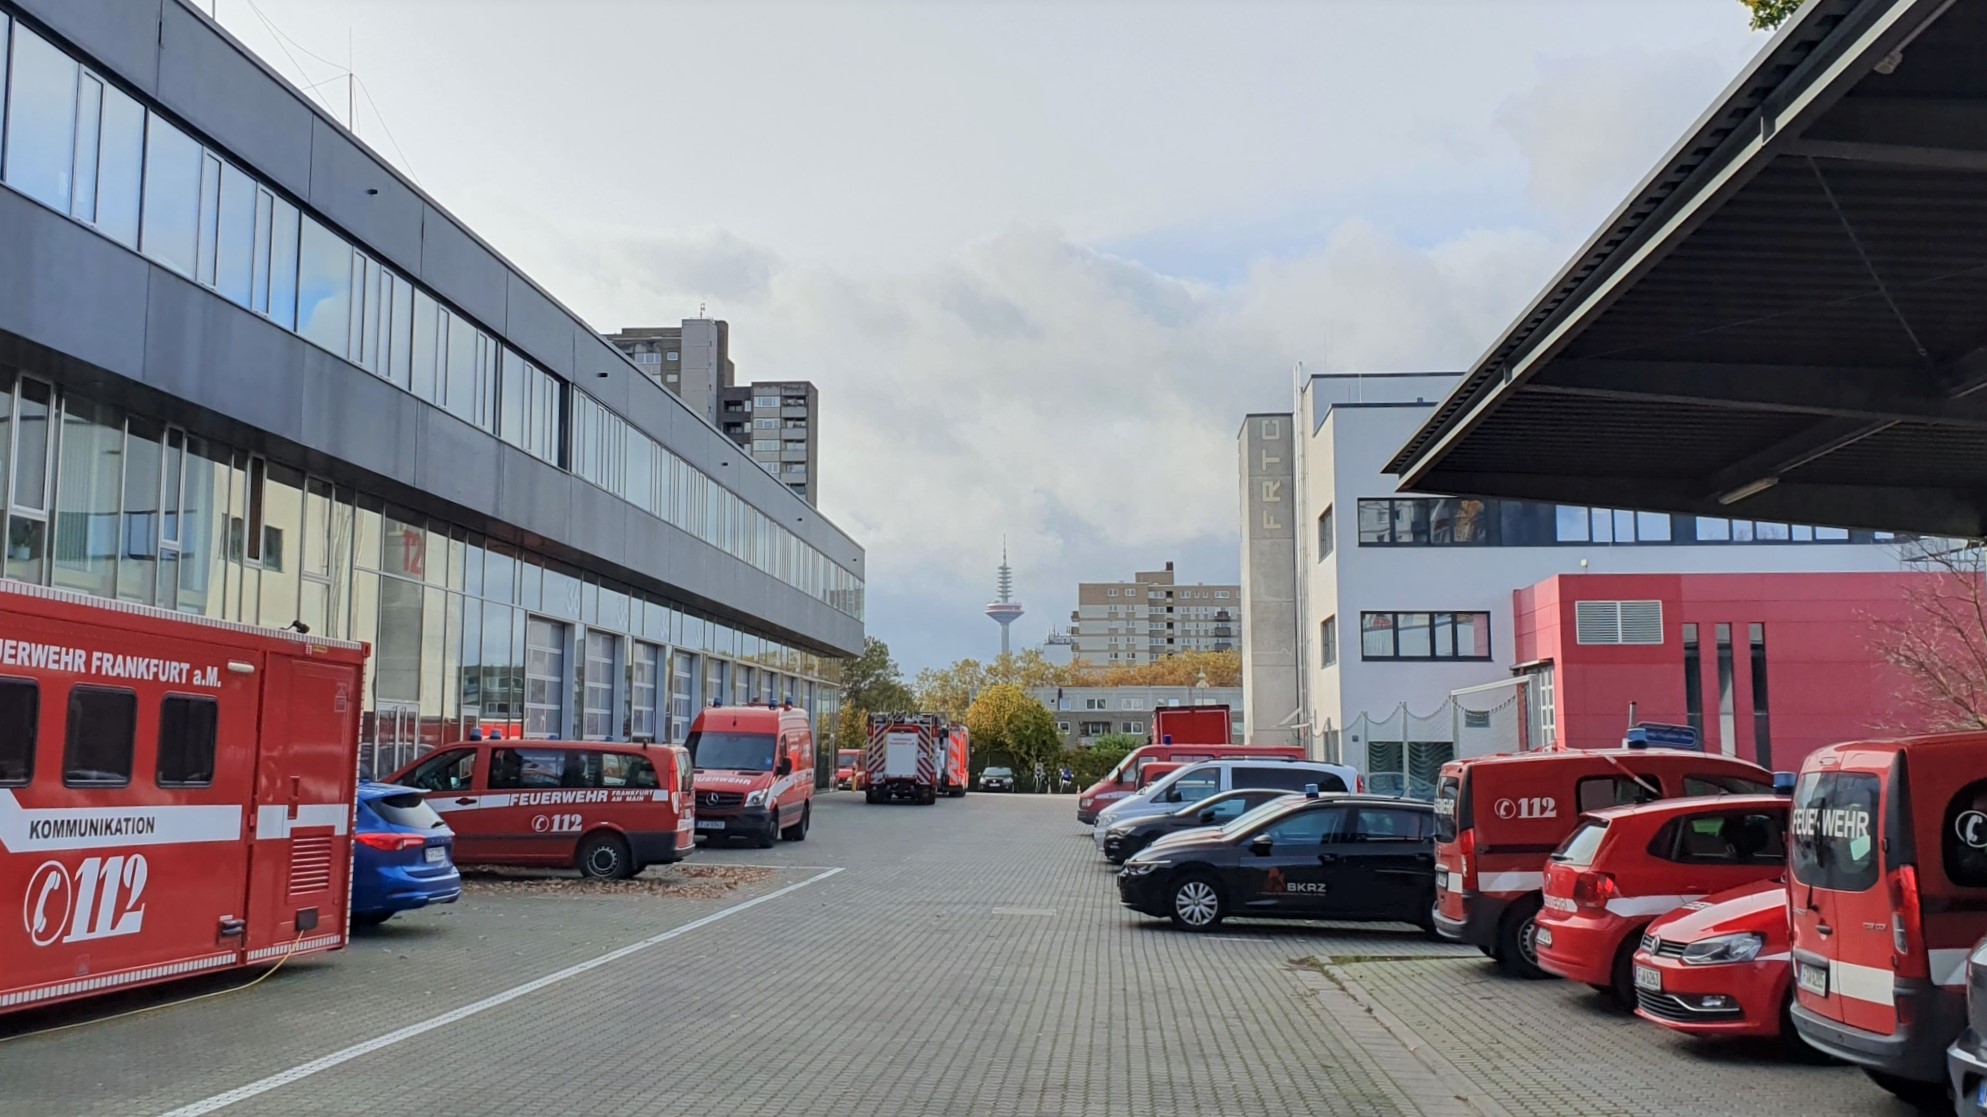 Brandschutz-, Katastrophenschutz- und Rettungsdienstzentrum Frankfurt am Main (BKRZ) | © BKRZ GmbH & Co. KG